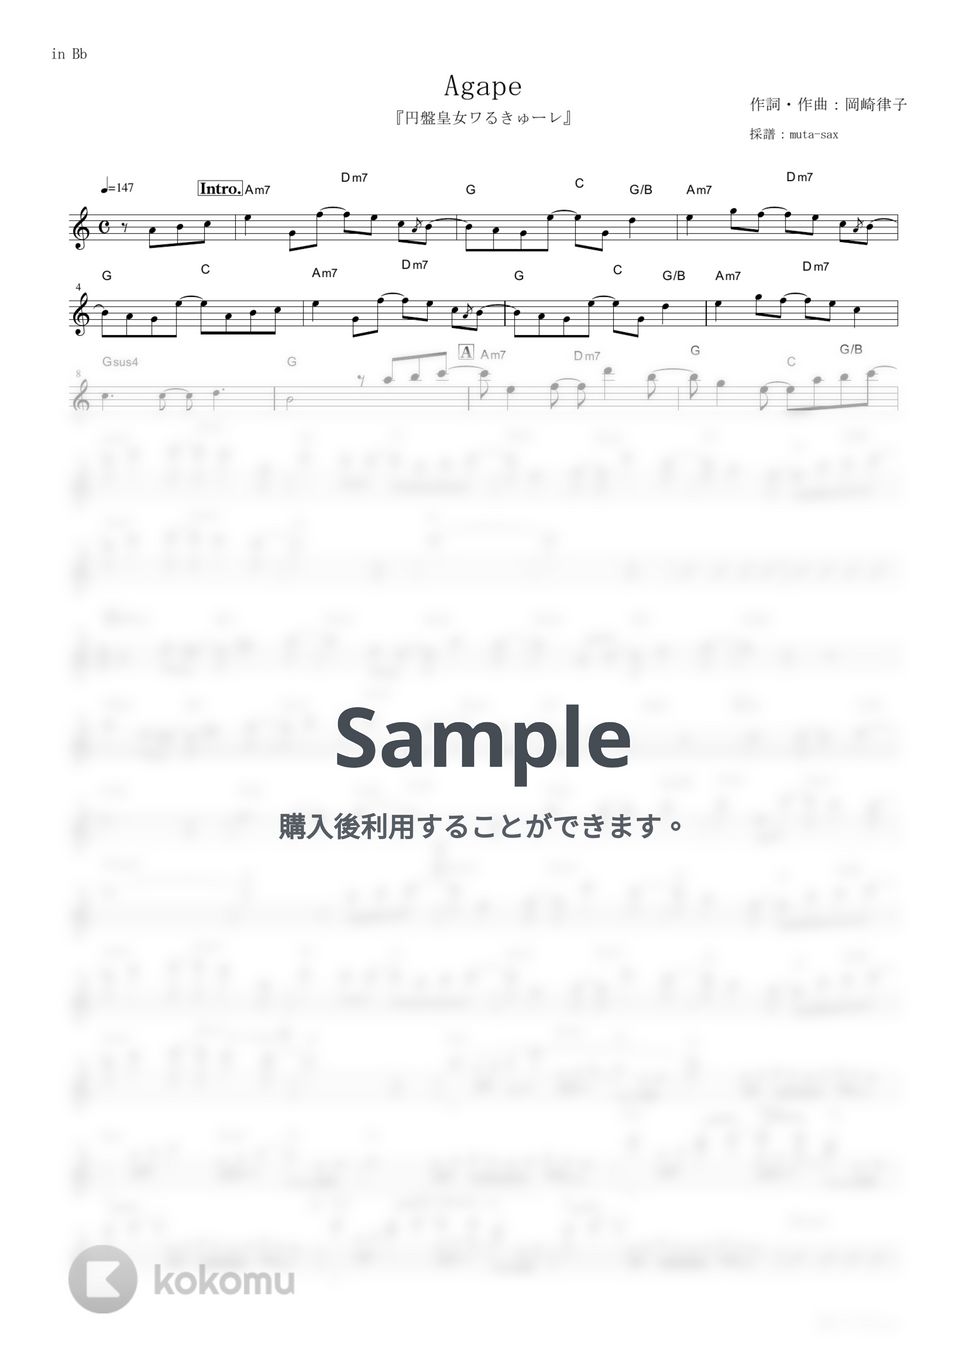 メロキュア - Agape (『円盤皇女ワるきゅーレ』 / in Bb) by muta-sax